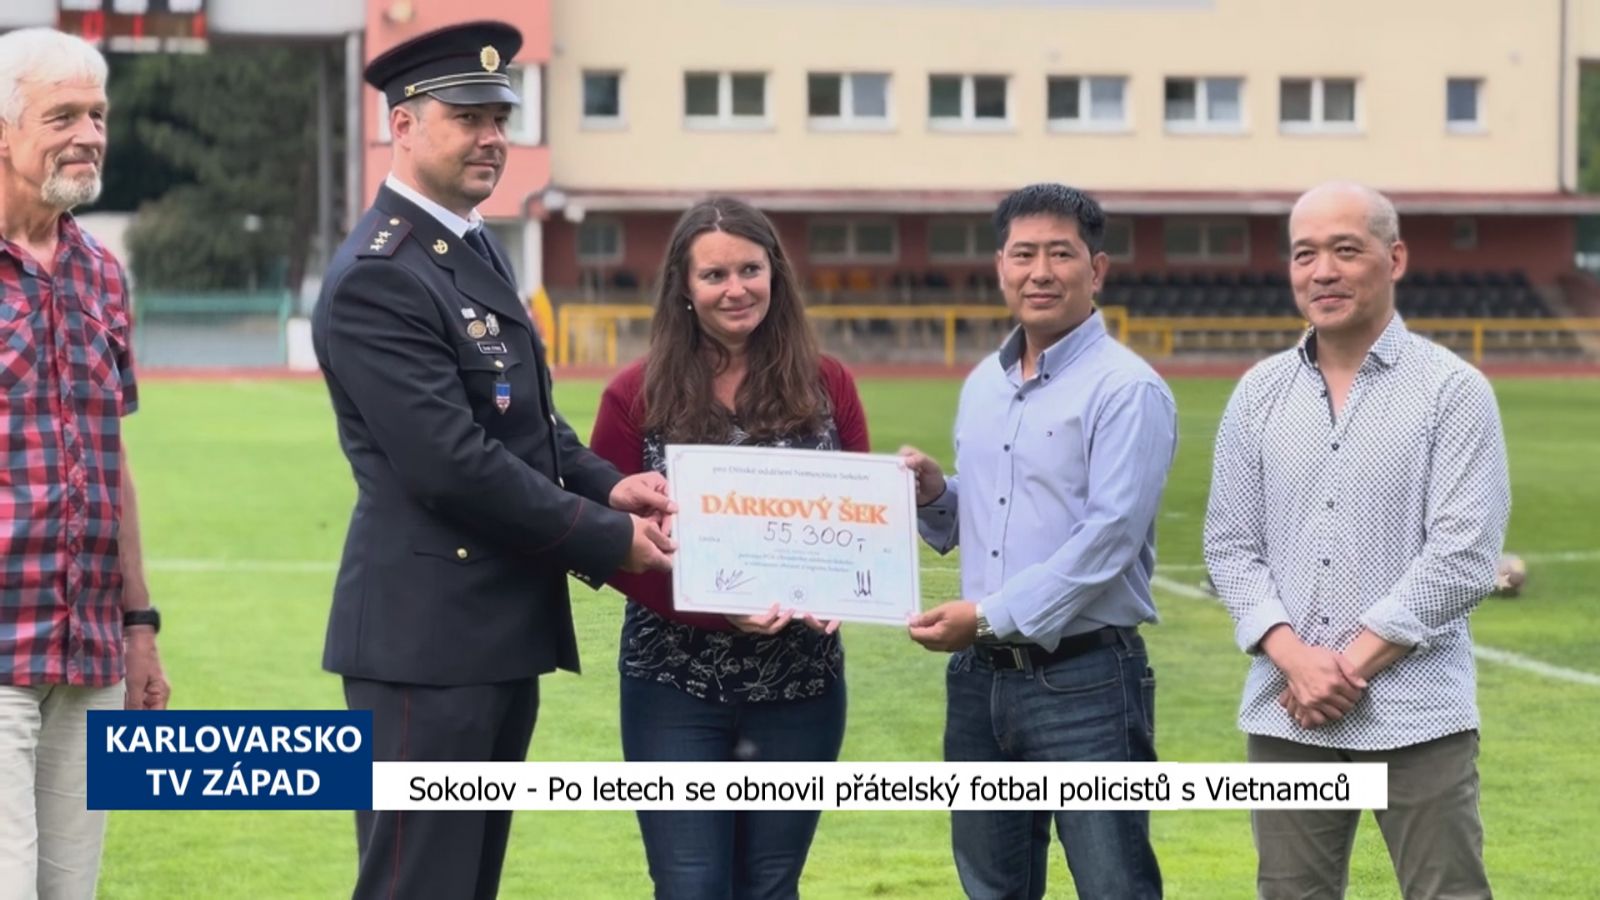 Sokolov: Po letech se obnovil přátelský fotbal policistů a Vietnamců (TV Západ)